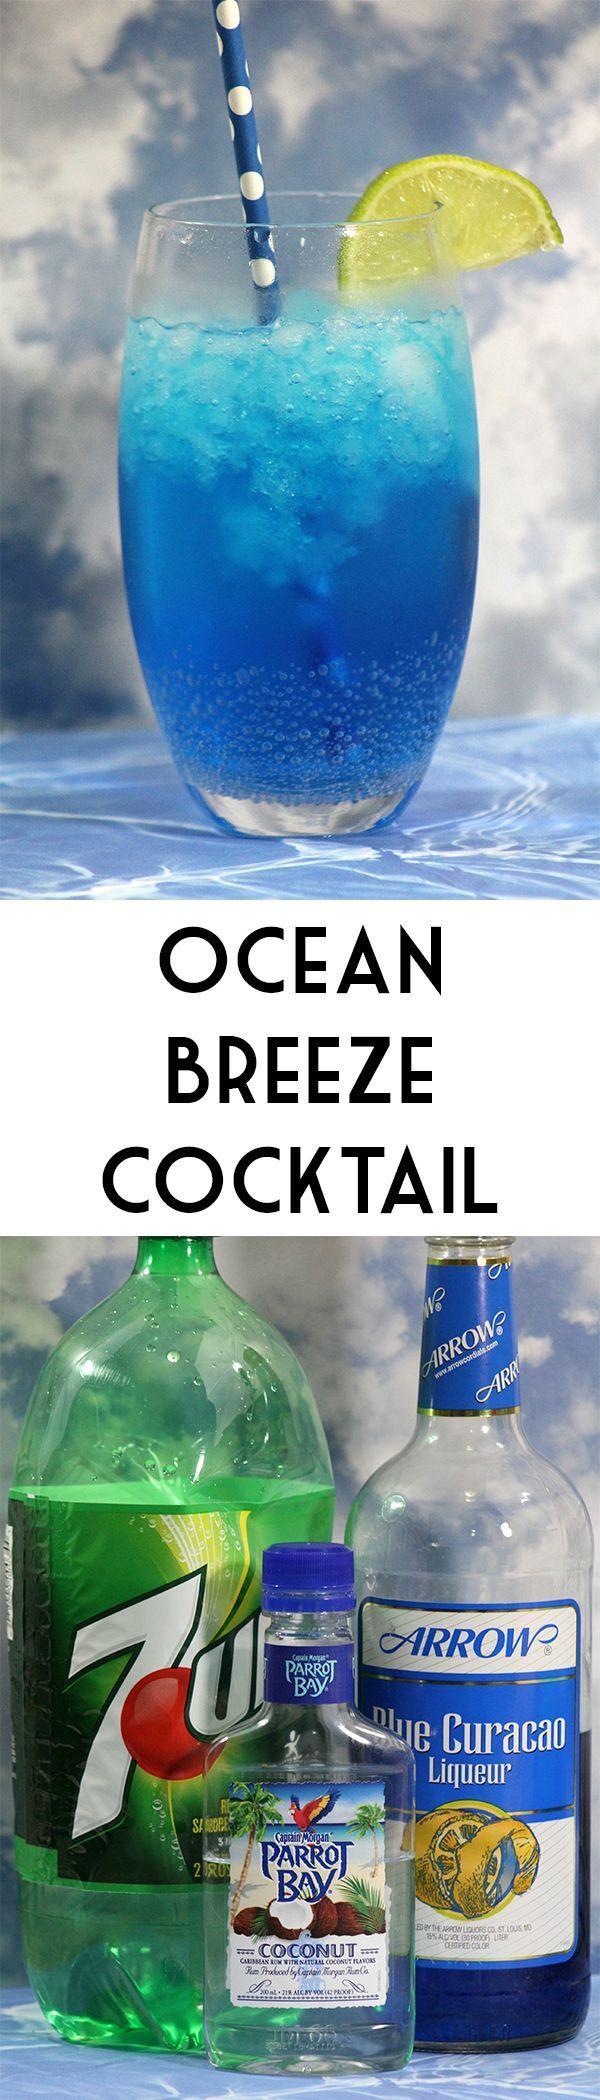 Wedding - Ocean Breeze Cocktail